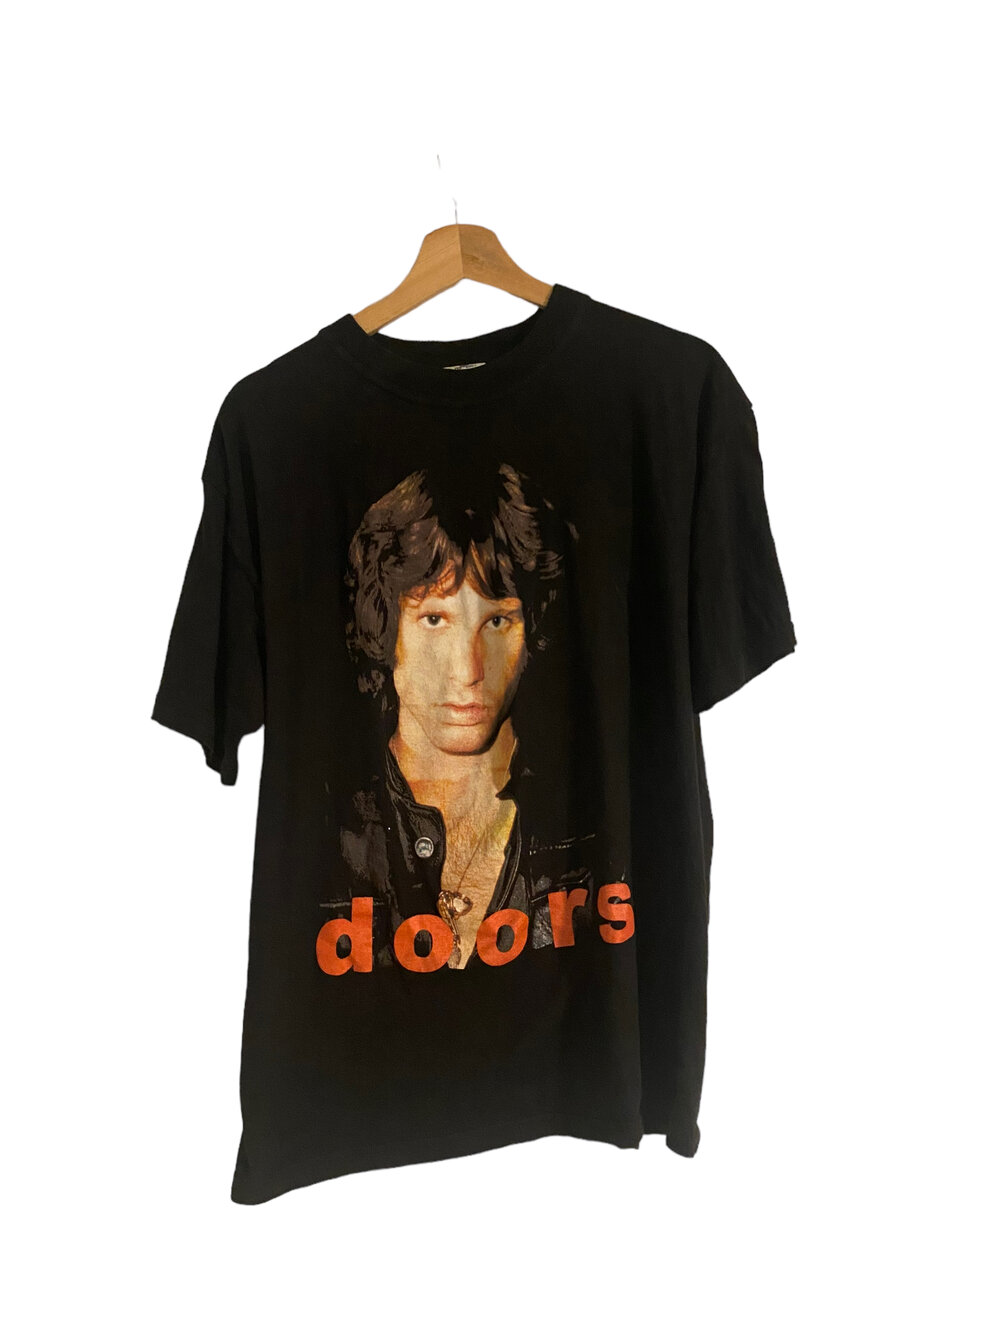 Doors Jim Morrison 's Euro T Shirt Sz M   read desc. — Vintage Hoss